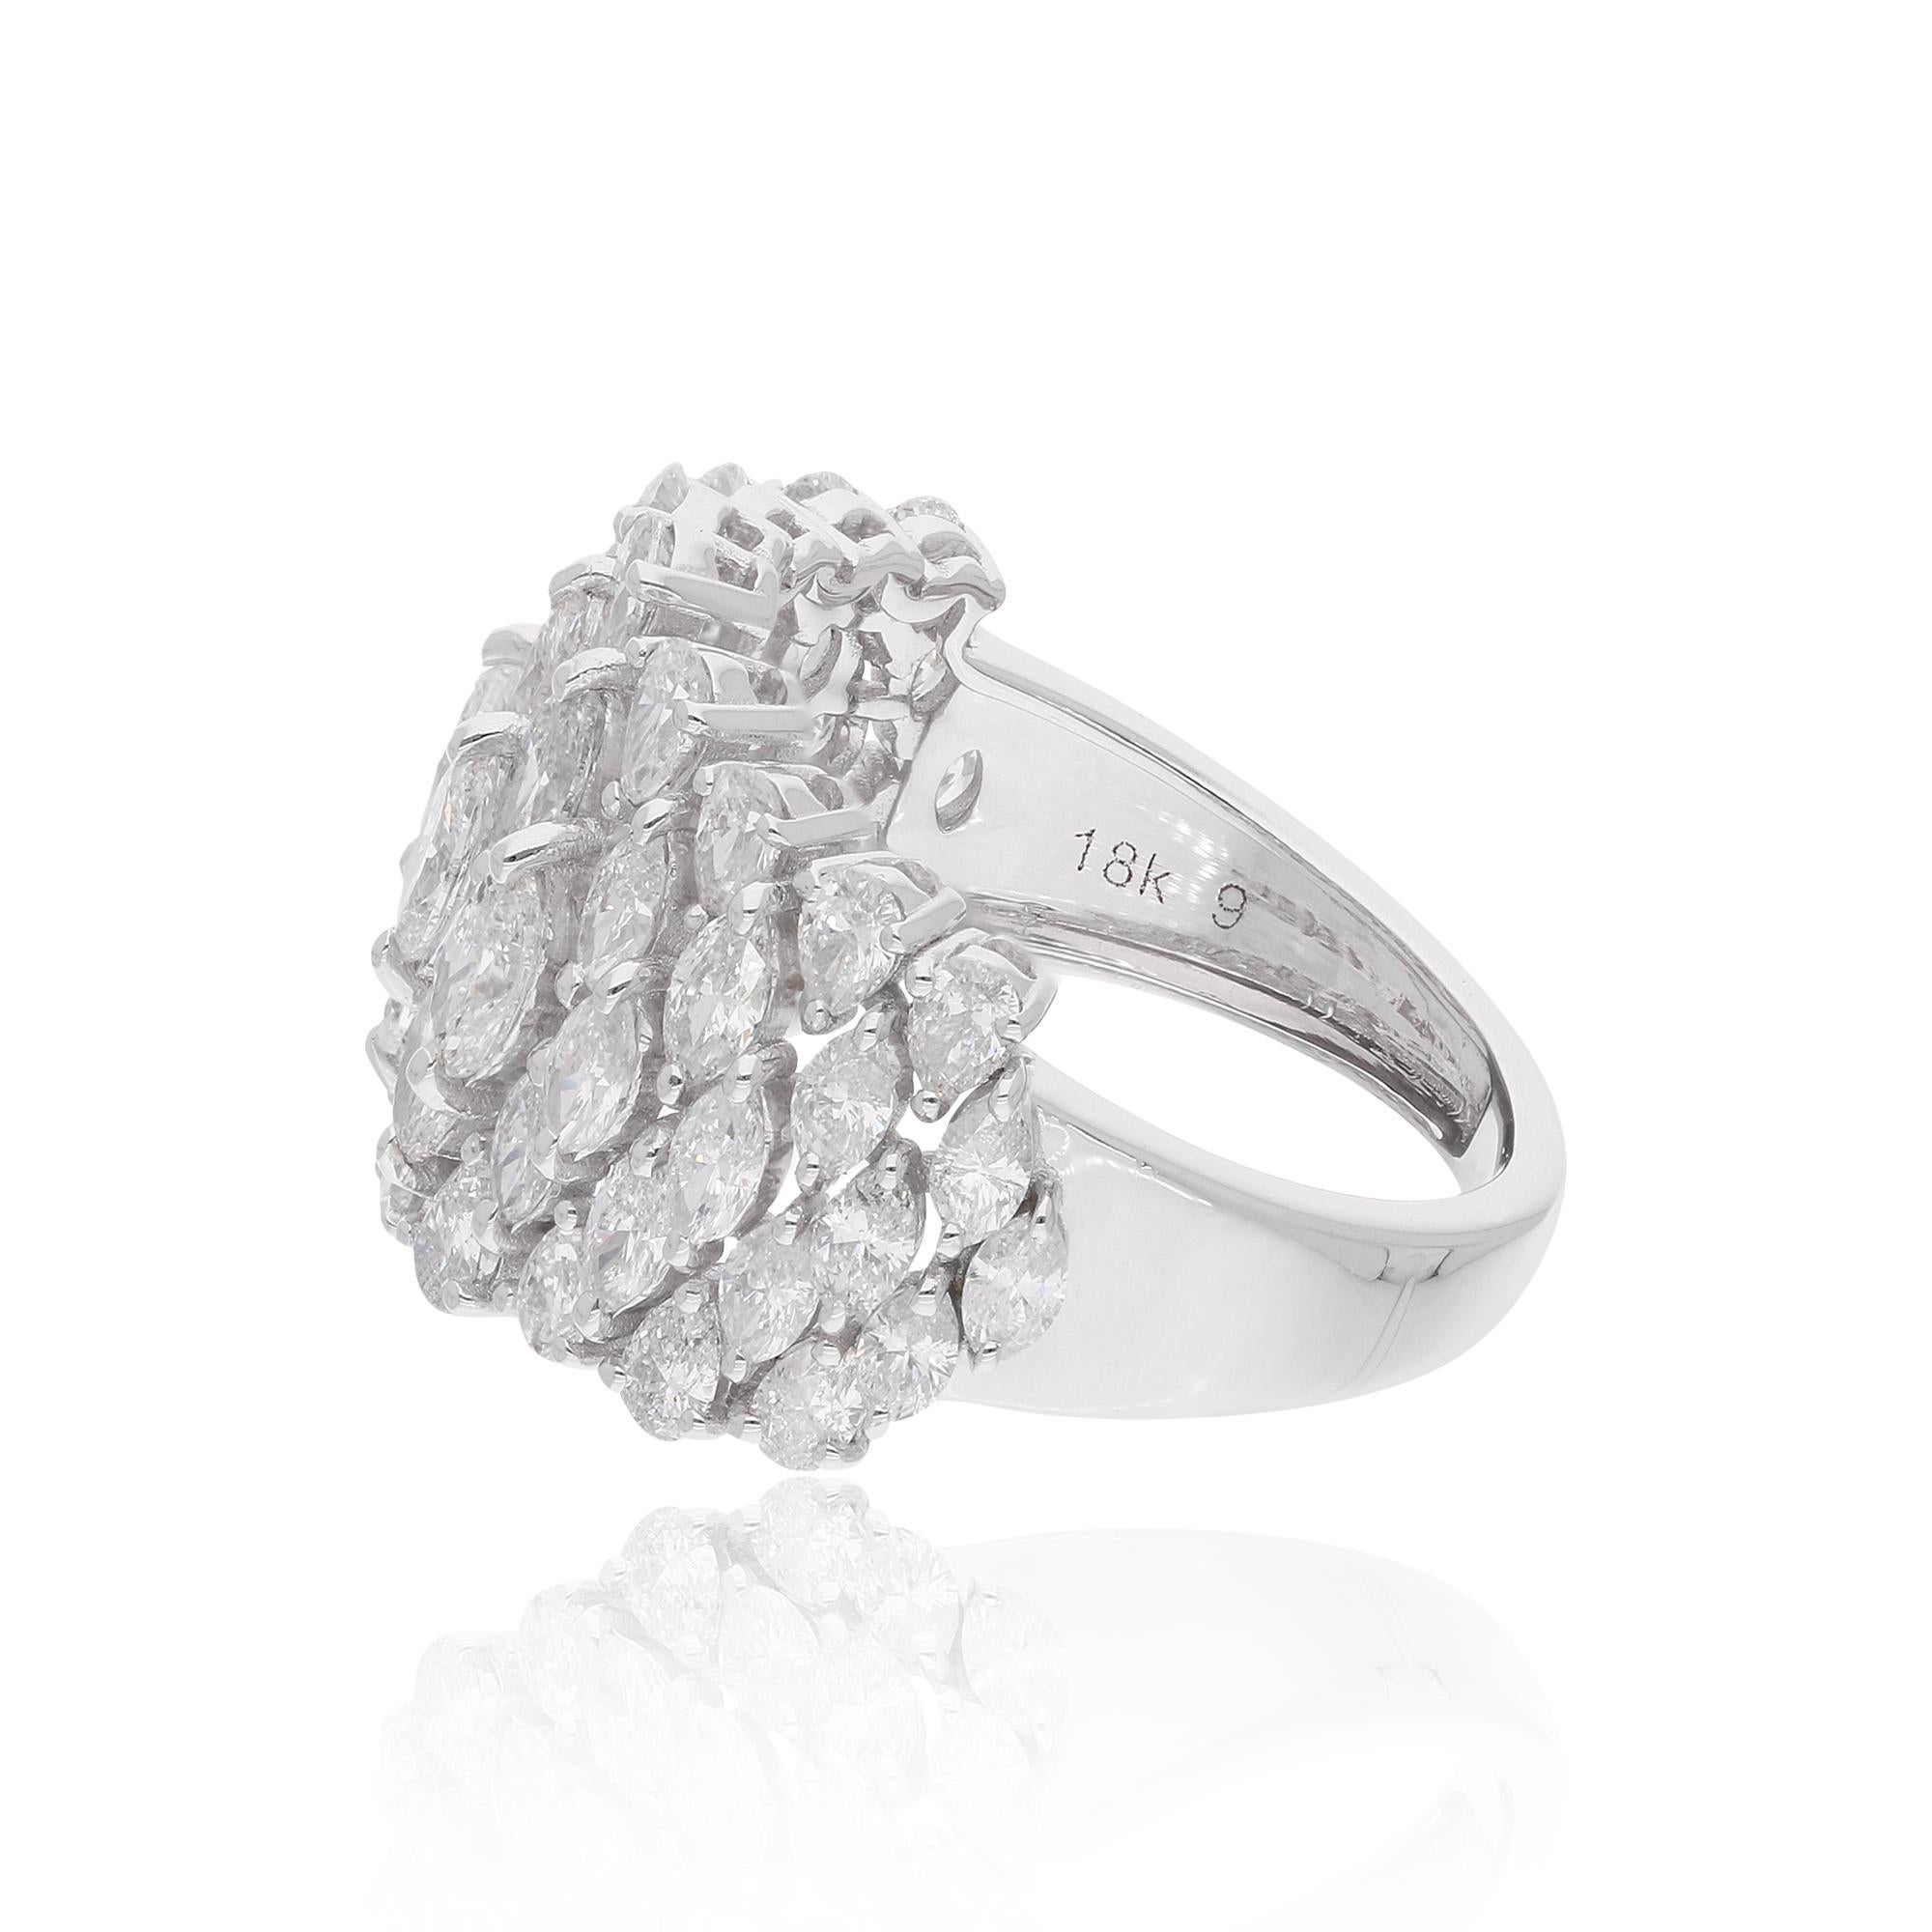 Un mélange parfait de classe et d'élégance Bague en or blanc 18 carats avec diamant. Cela doit vous permettre d'attirer l'attention.

✧✧Welcome To Our Shop Spectrum Jewels India✧

